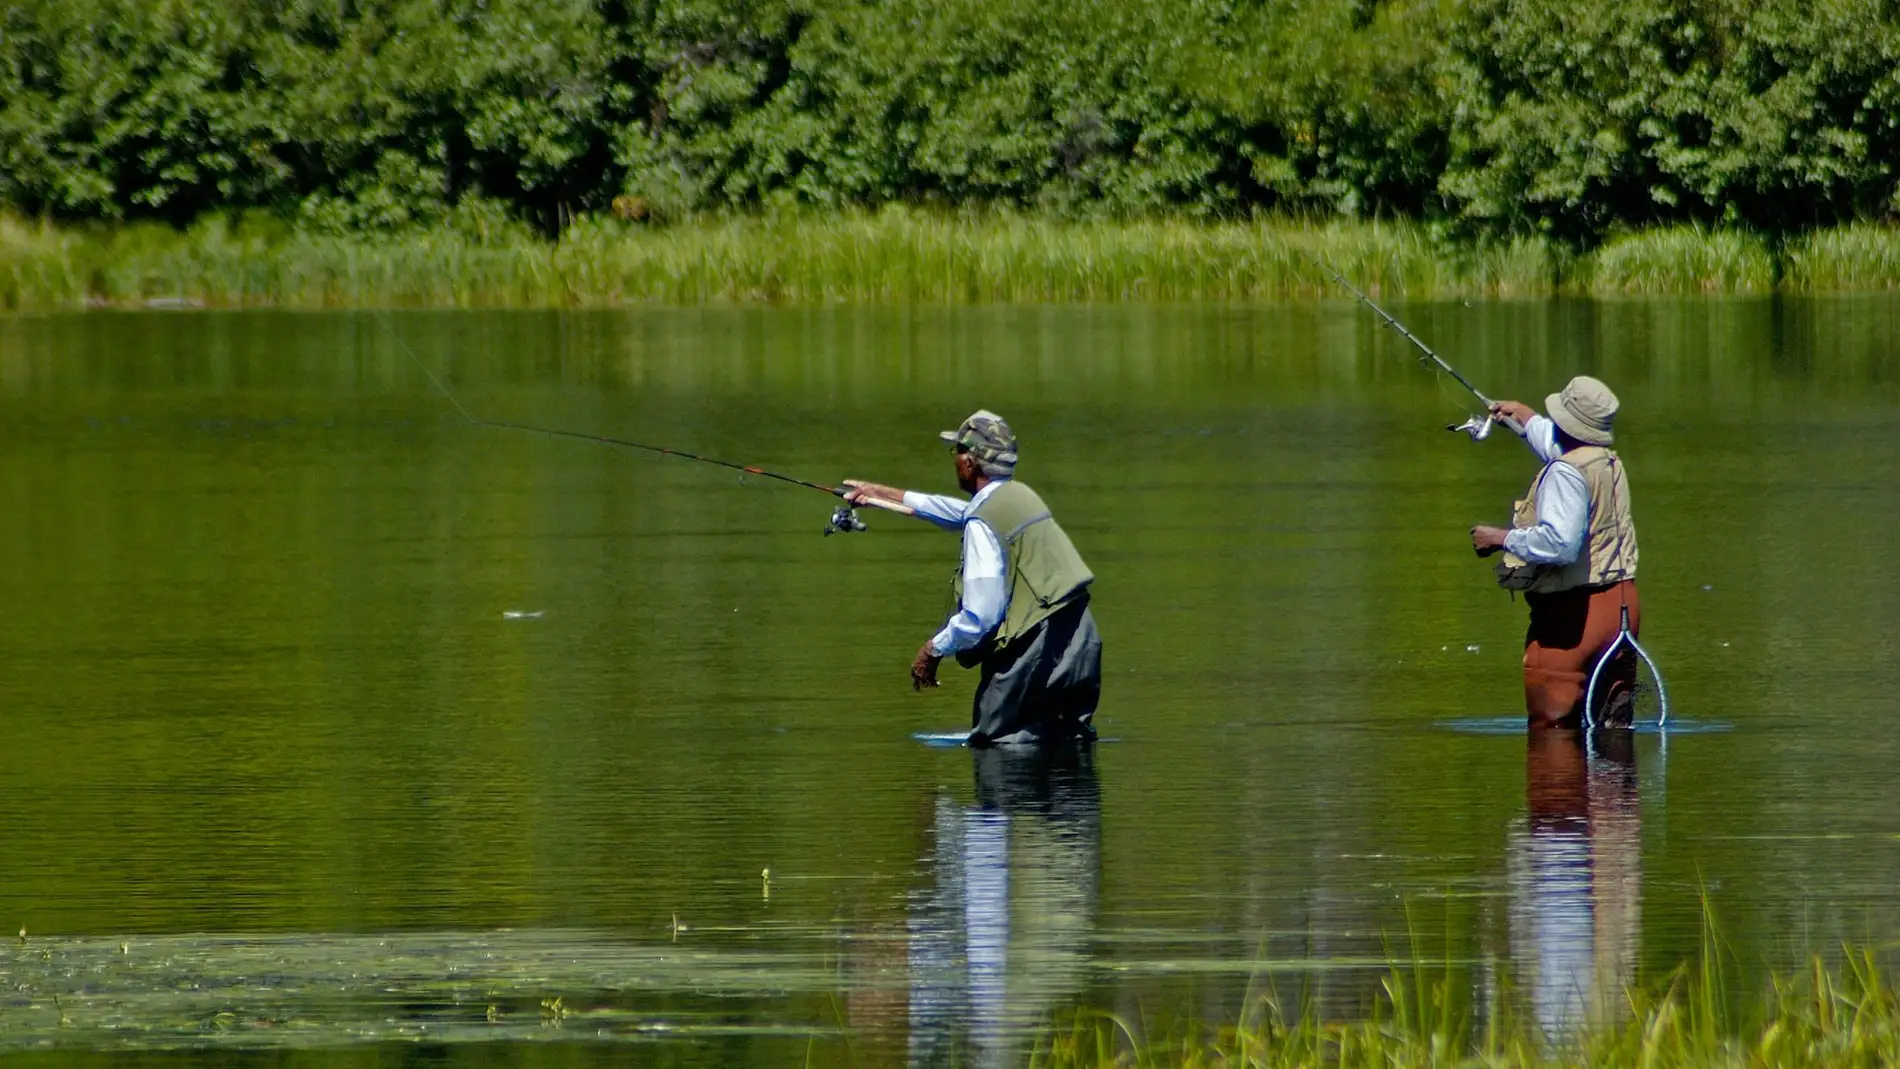 A Temporada de pesca fluvial comeza para máis de 38.000 aficionados